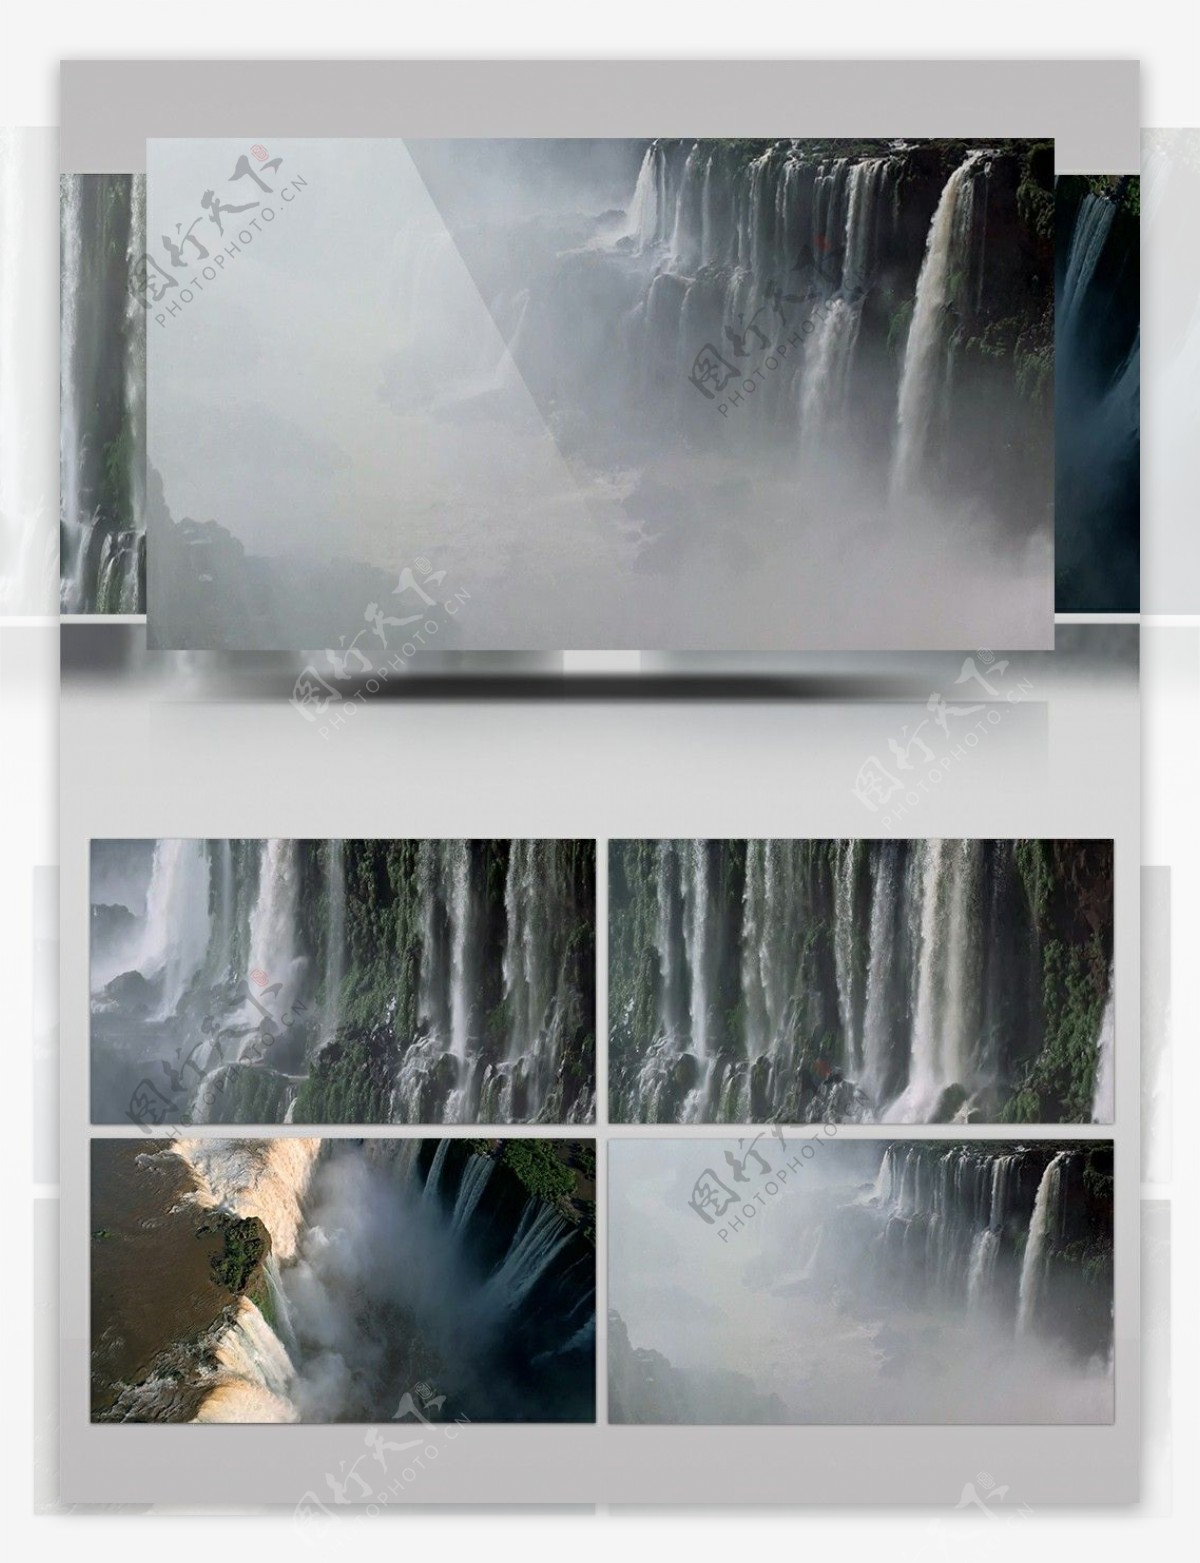 壮观瀑布流水实拍素材